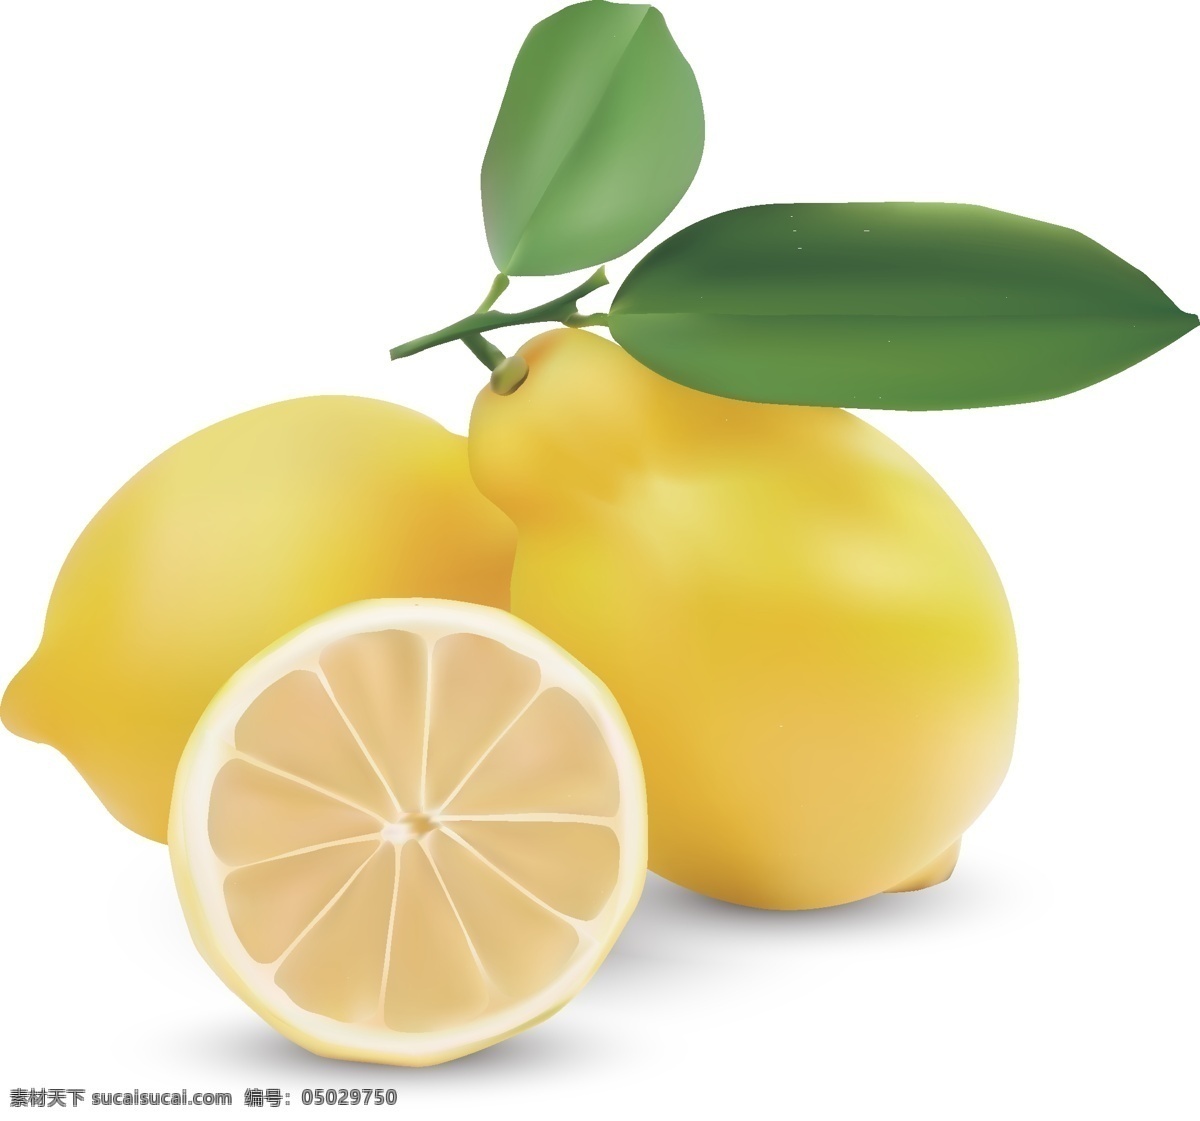 矢量柠檬图片 柠檬 矢量柠檬 水果 黄色柠檬 桃子 矢量黄柠檬 黄柠檬 矢量带叶柠檬 花卉素材